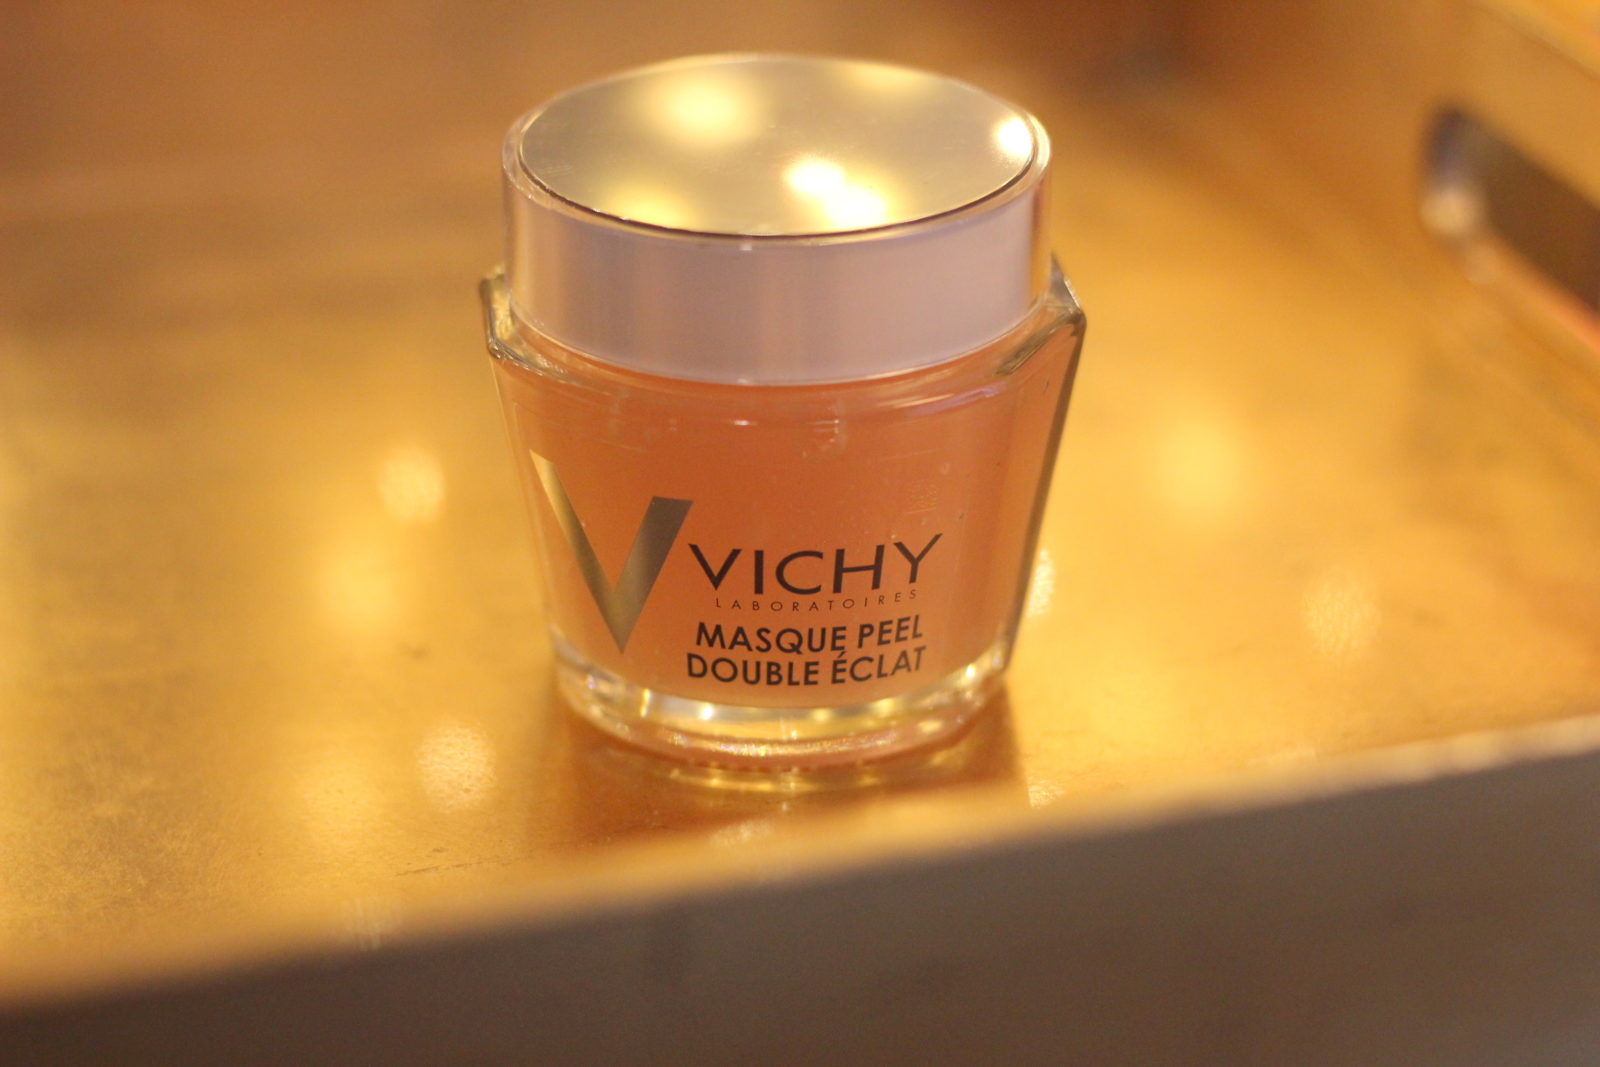 Vichy Masque Peel